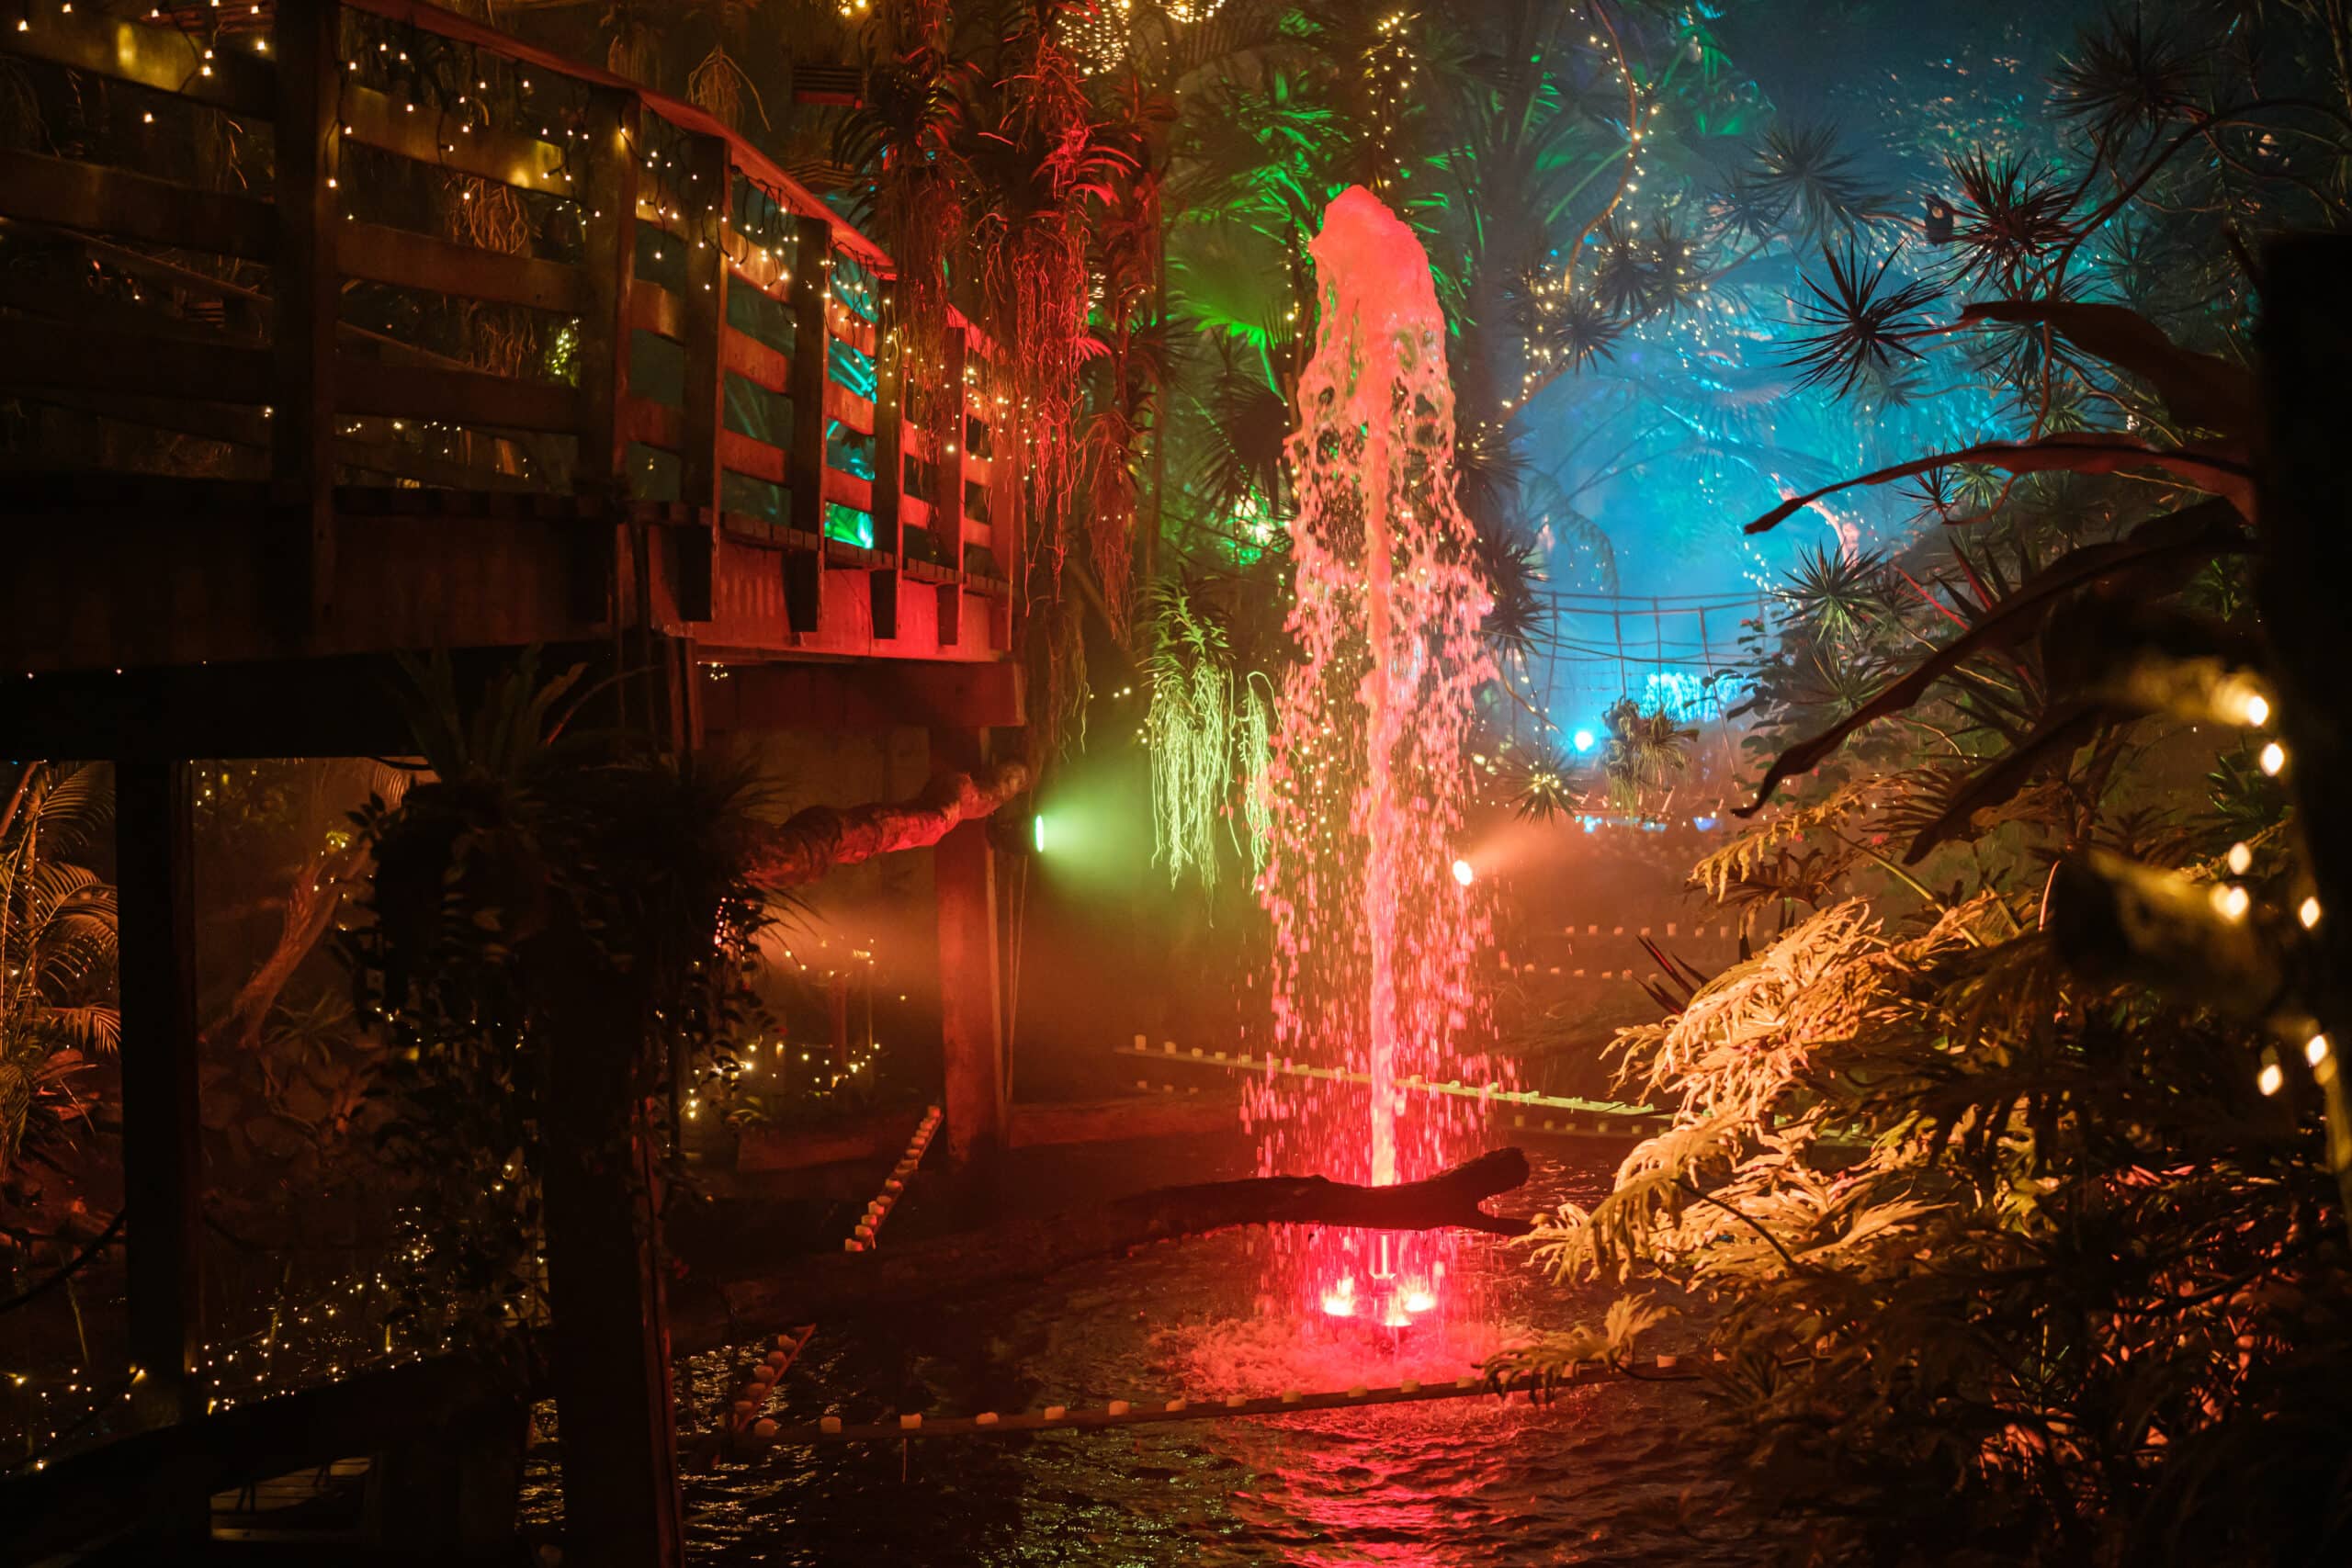 Van Tienhovengracht nóg kleurrijker met verlichte fonteinen